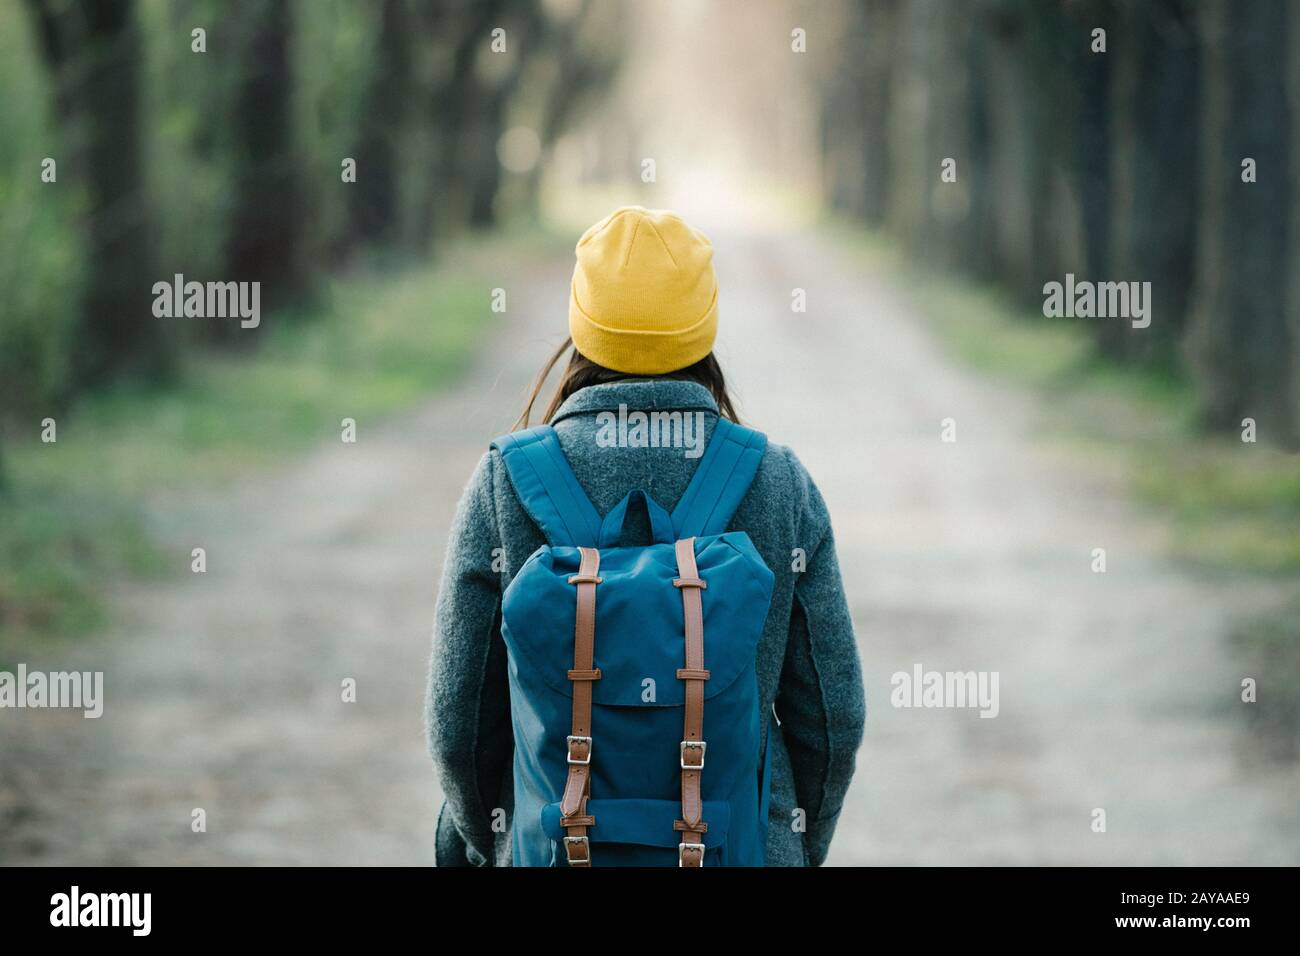 Junge Frau, die auf ihrer Reise auf einer Allee spazieren geht. Stockfoto